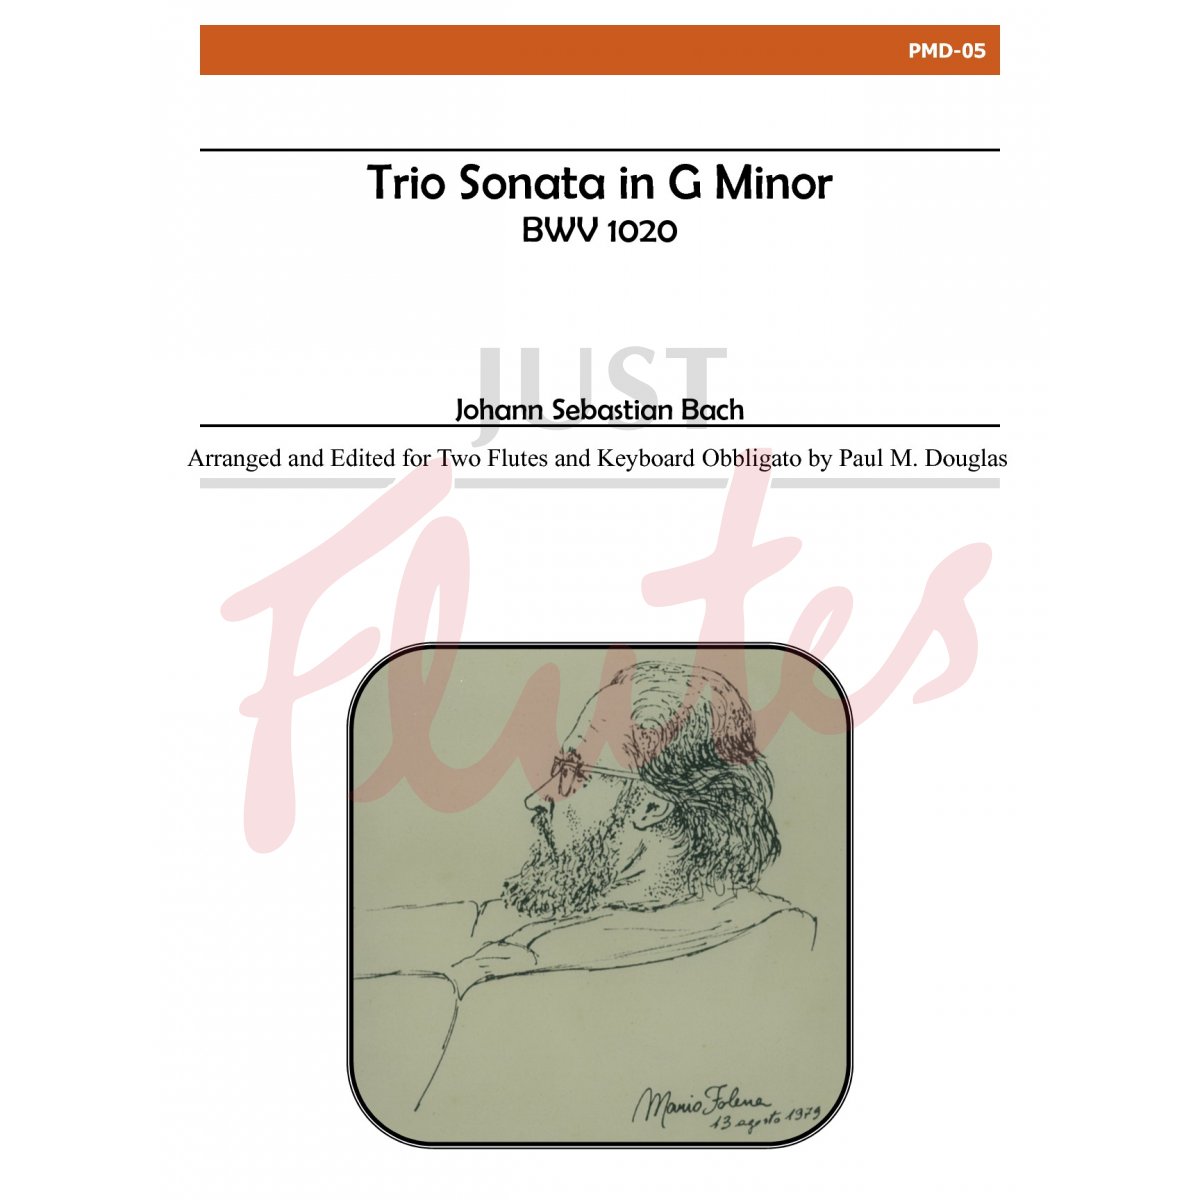 Trio Sonata in G Minor